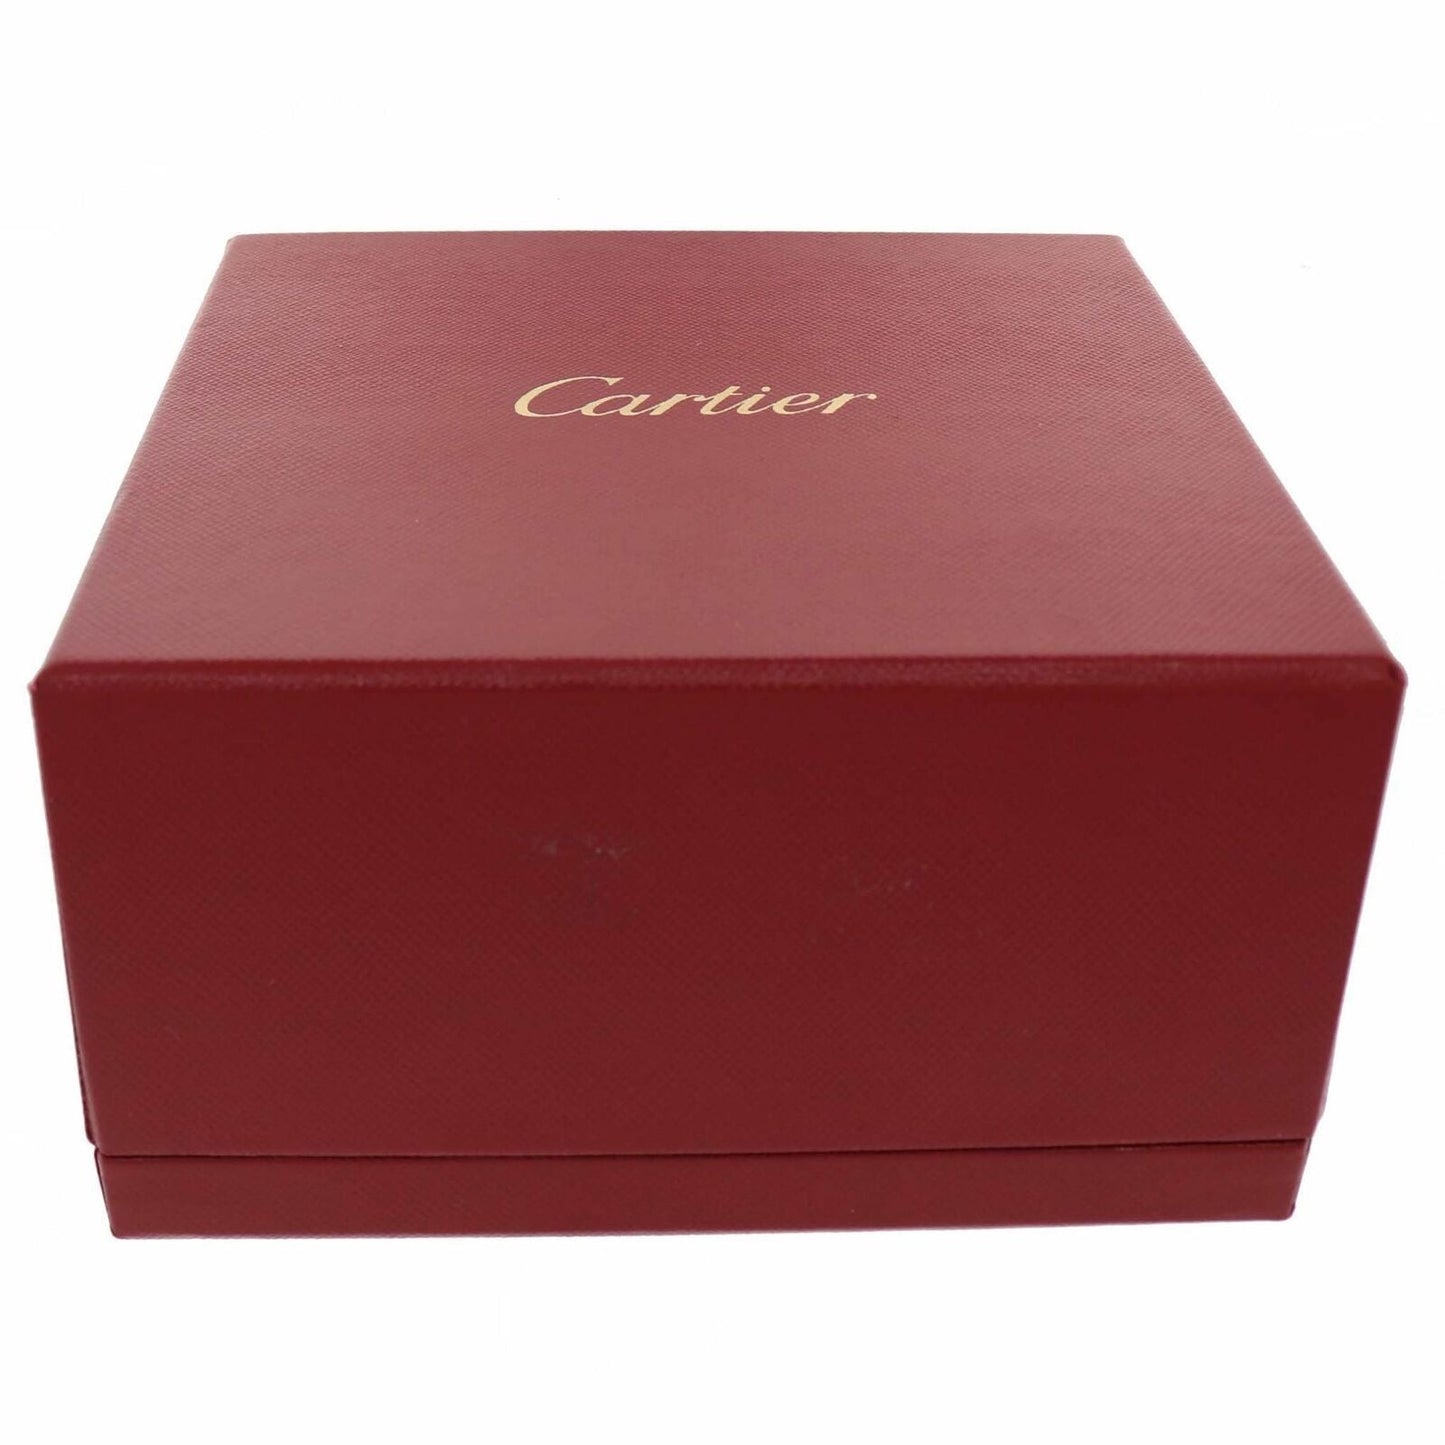 2020 Cartier 18k Rose Gold 4 Diamond Love Bangle Bracelet Size 20